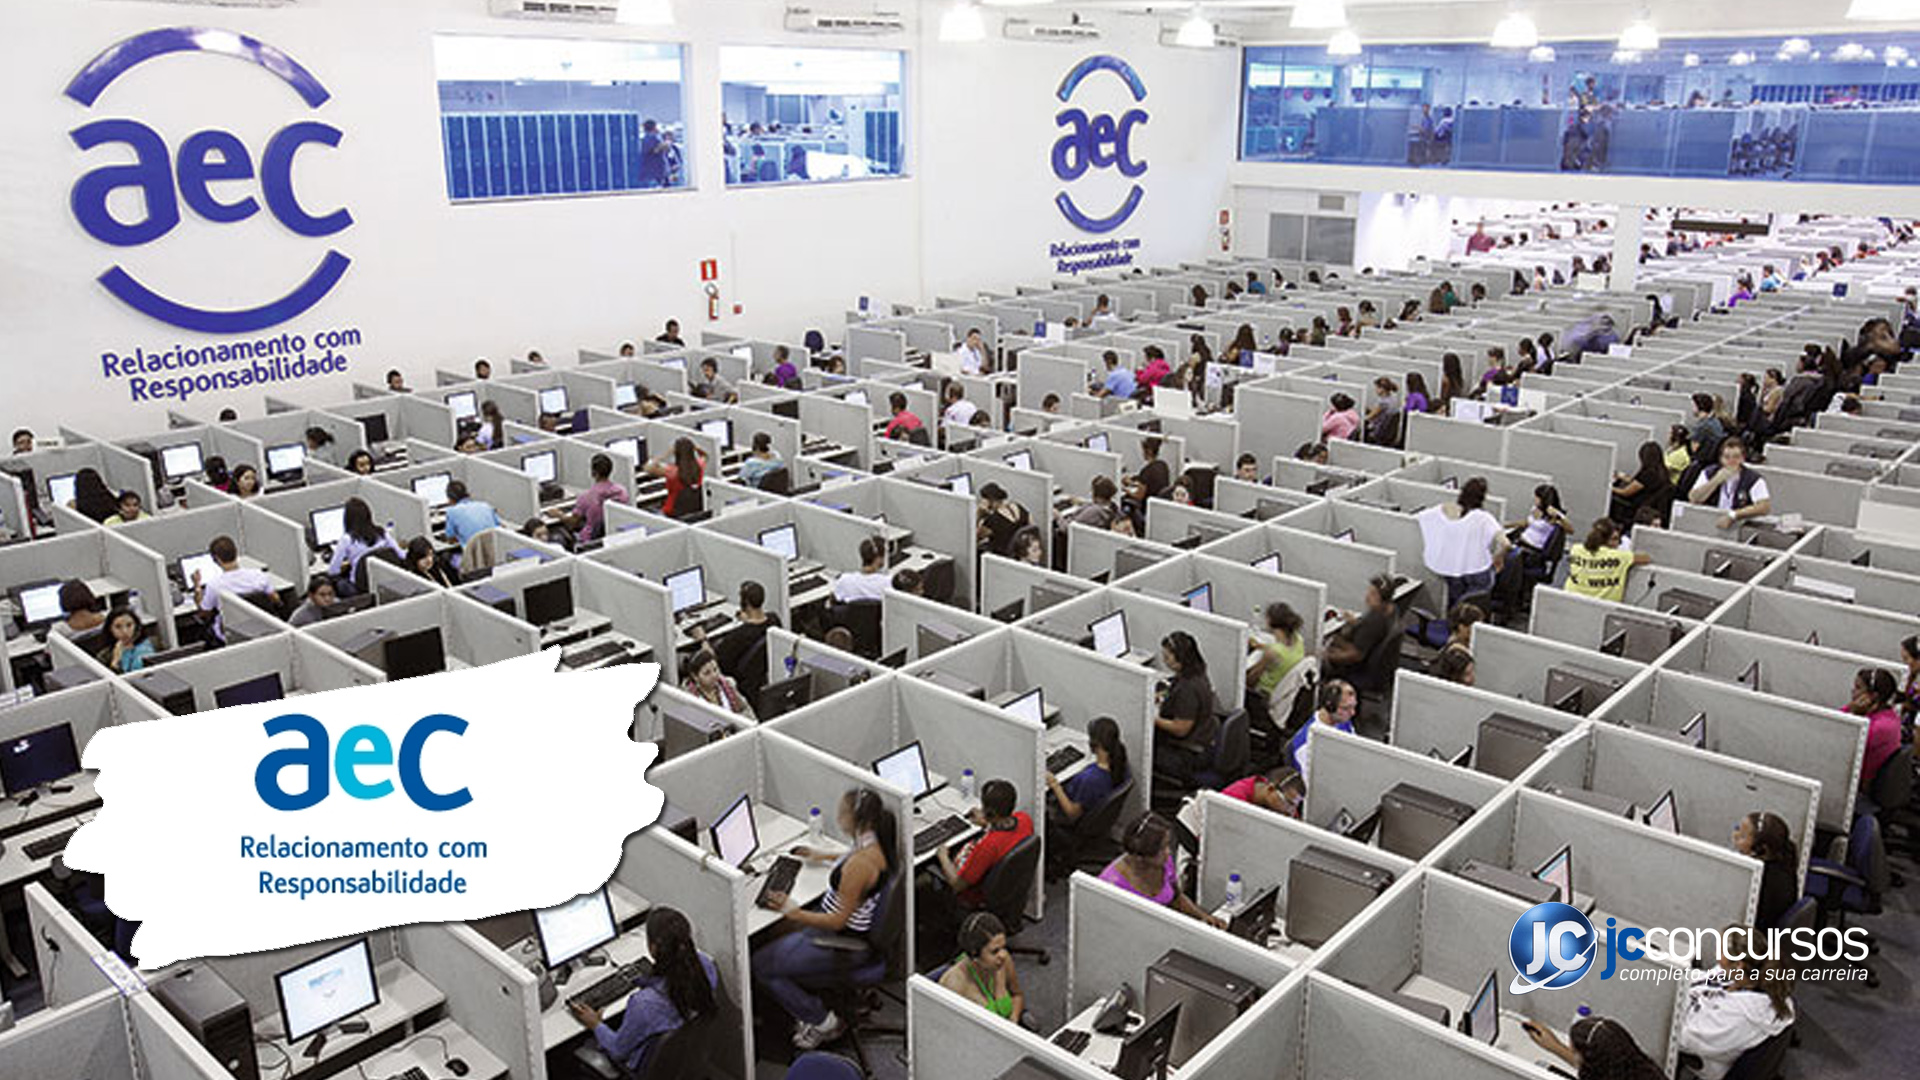 AeC abre 500 vagas para atendente em Belo Horizonte; confira as